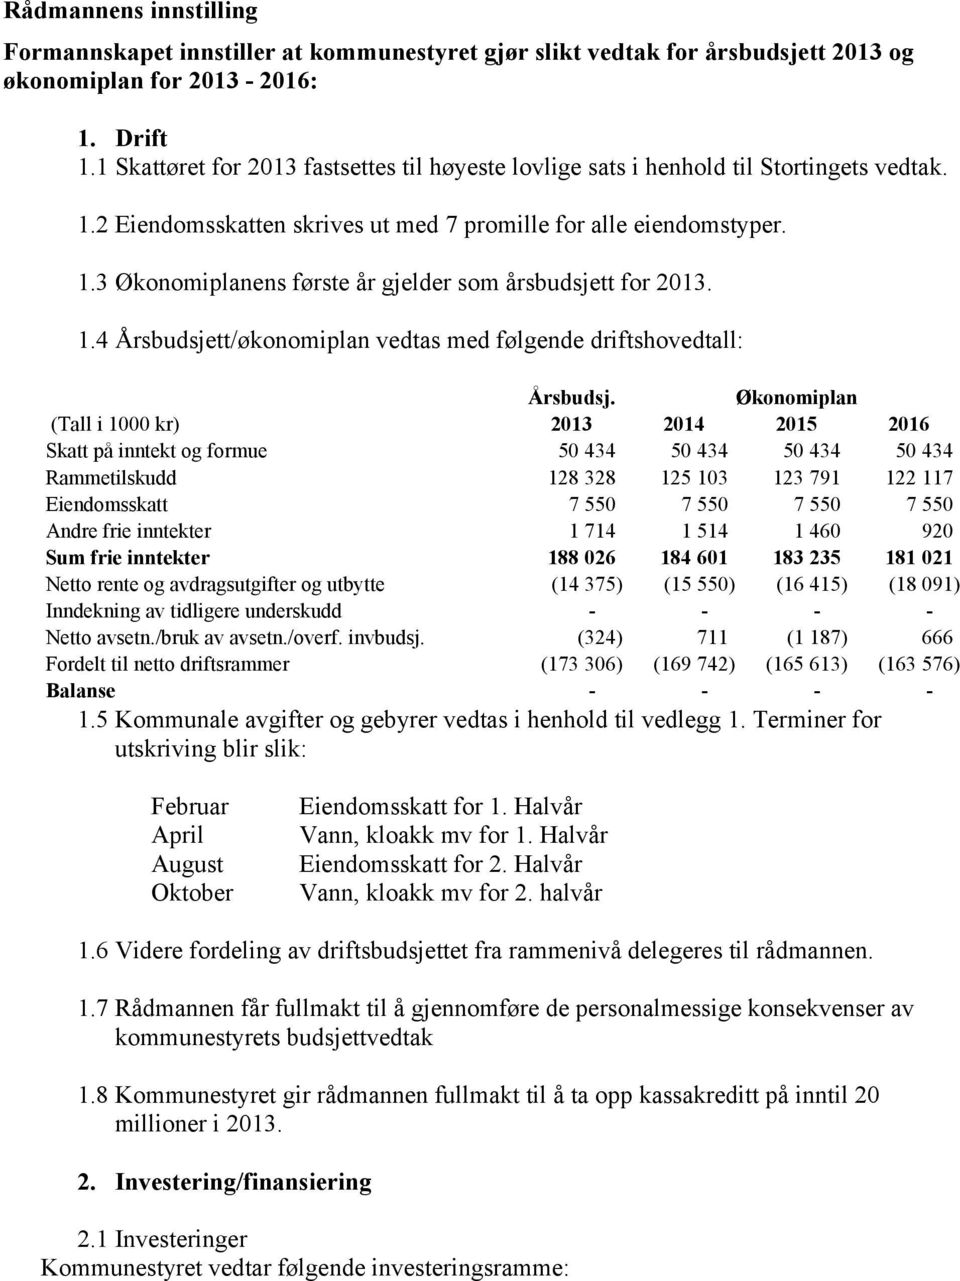 1.4 Årsbudsjett/økonomiplan vedtas med følgende driftshovedtall: Årsbudsj.